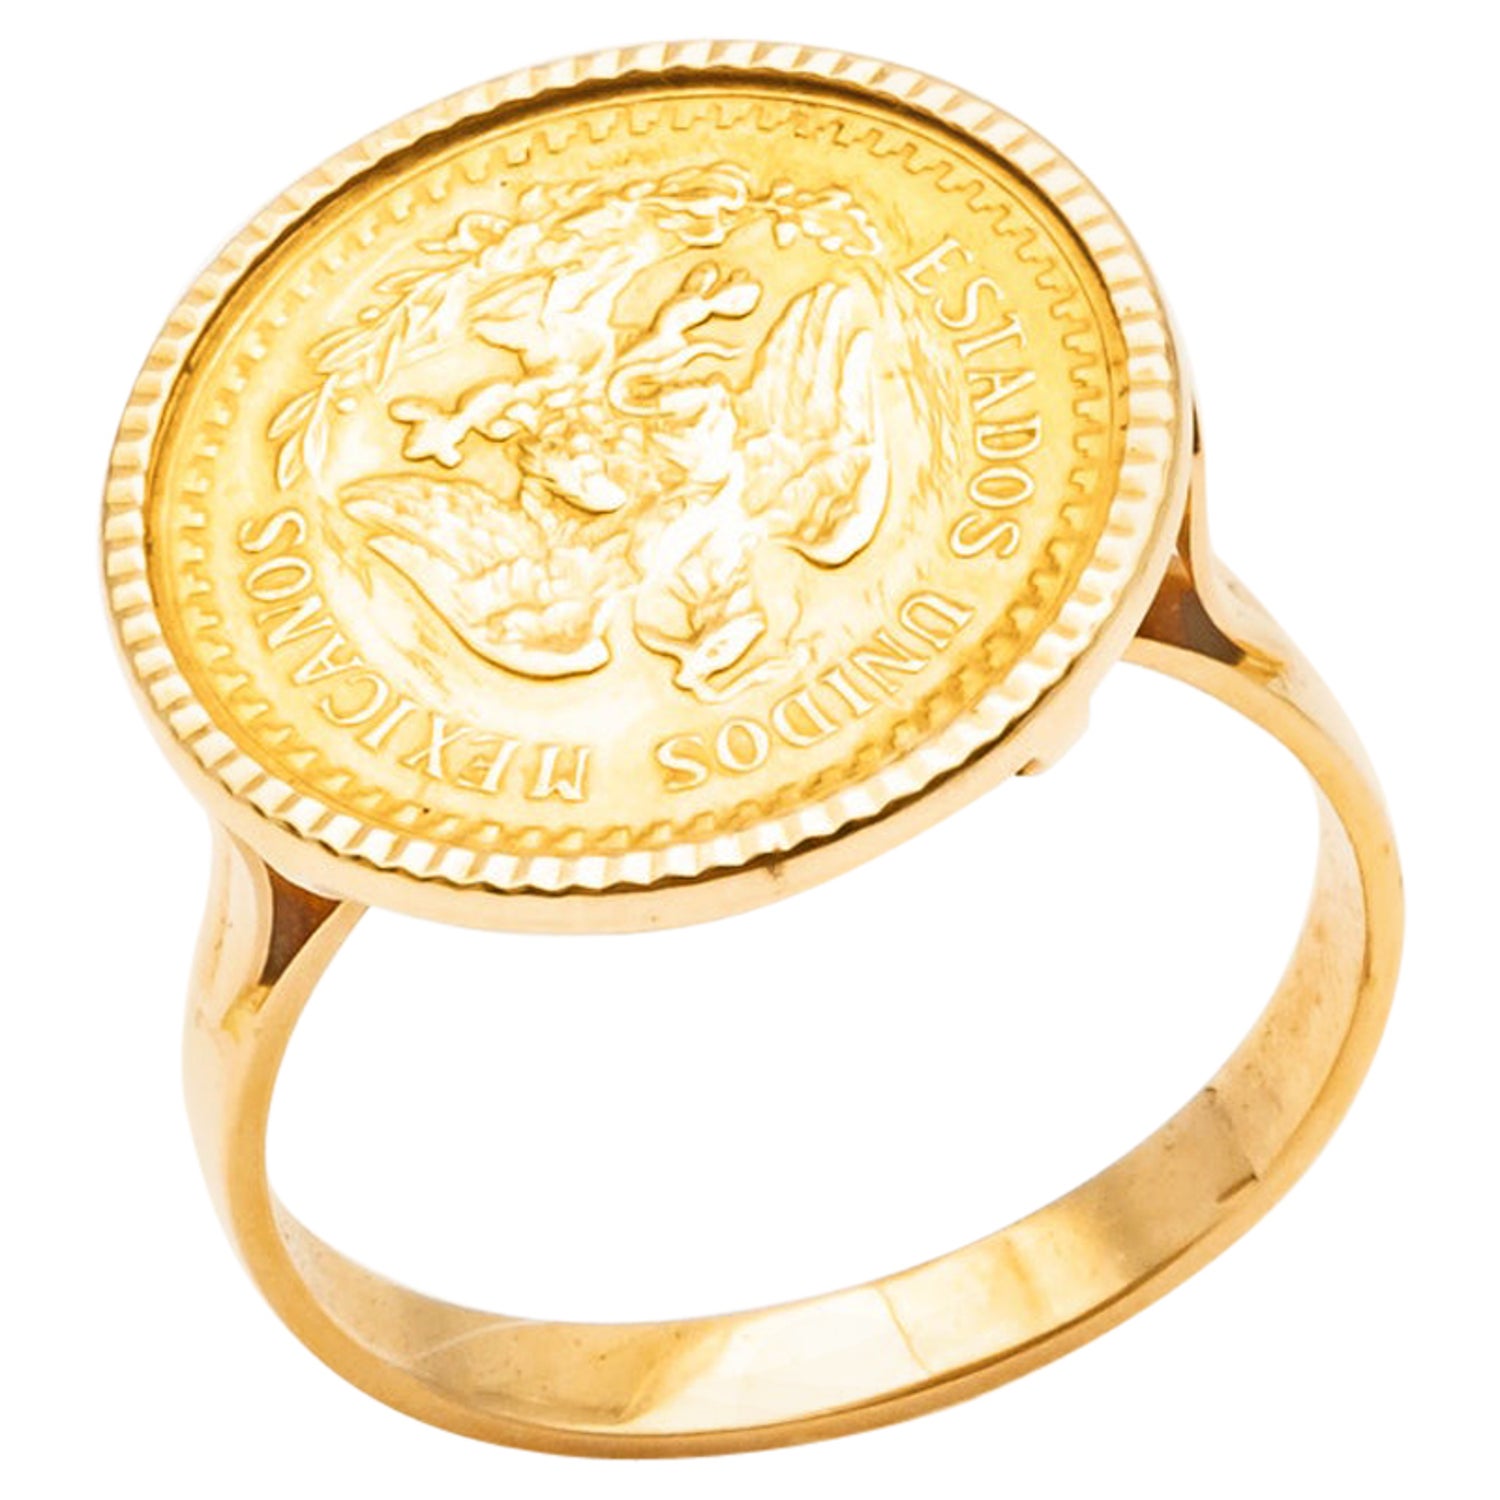 Dos Pesos - 13 For Sale on 1stDibs | dos pesos ring, dos y medio pesos 1945  ring, dos pesos gold coin ring